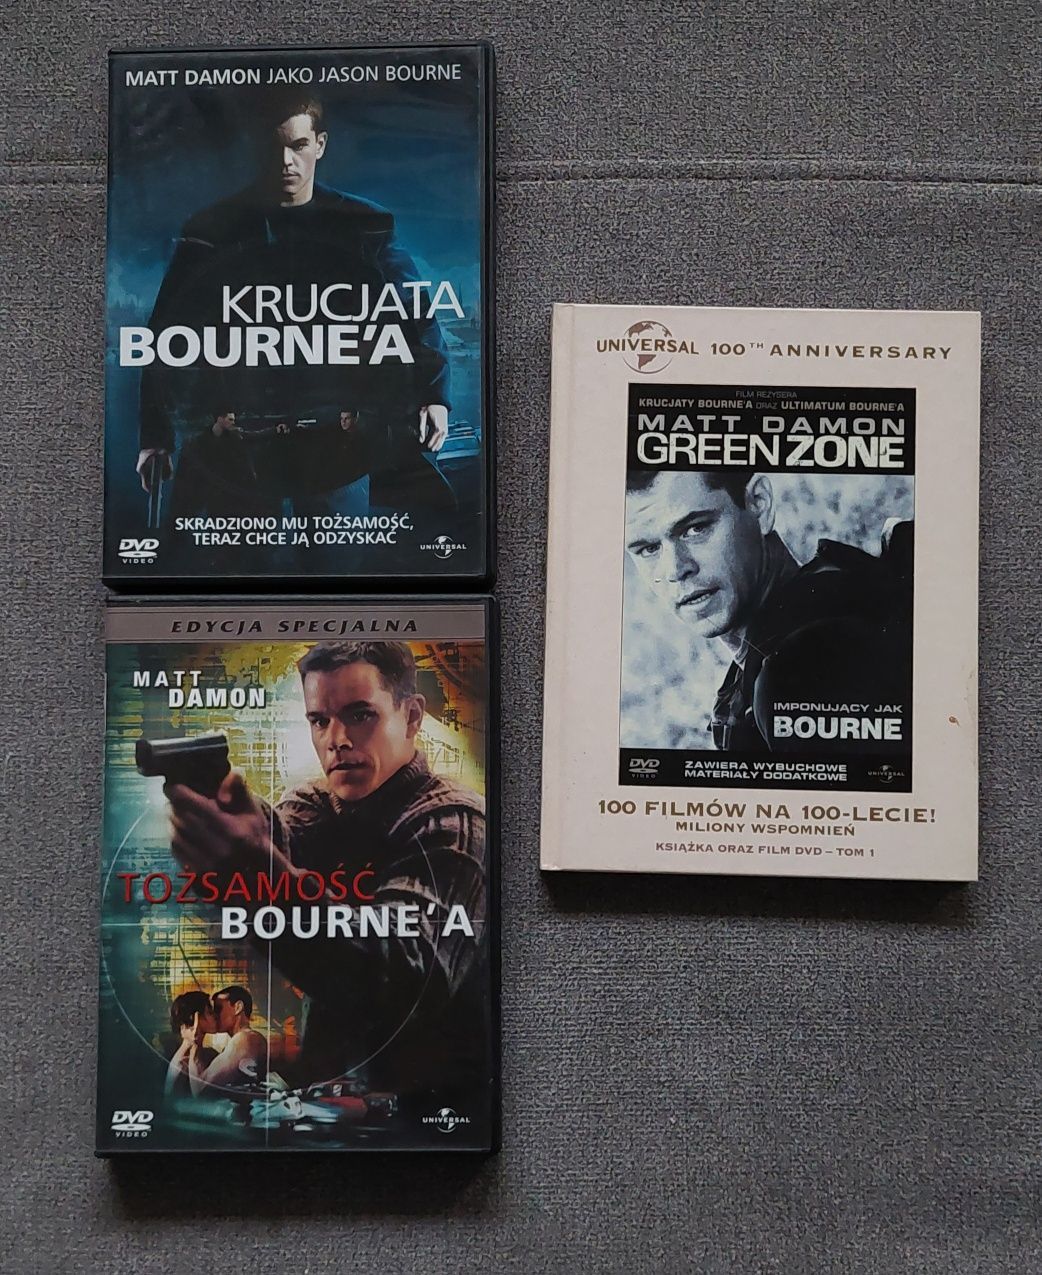 Filmy na DVD z kolekcji Bournea